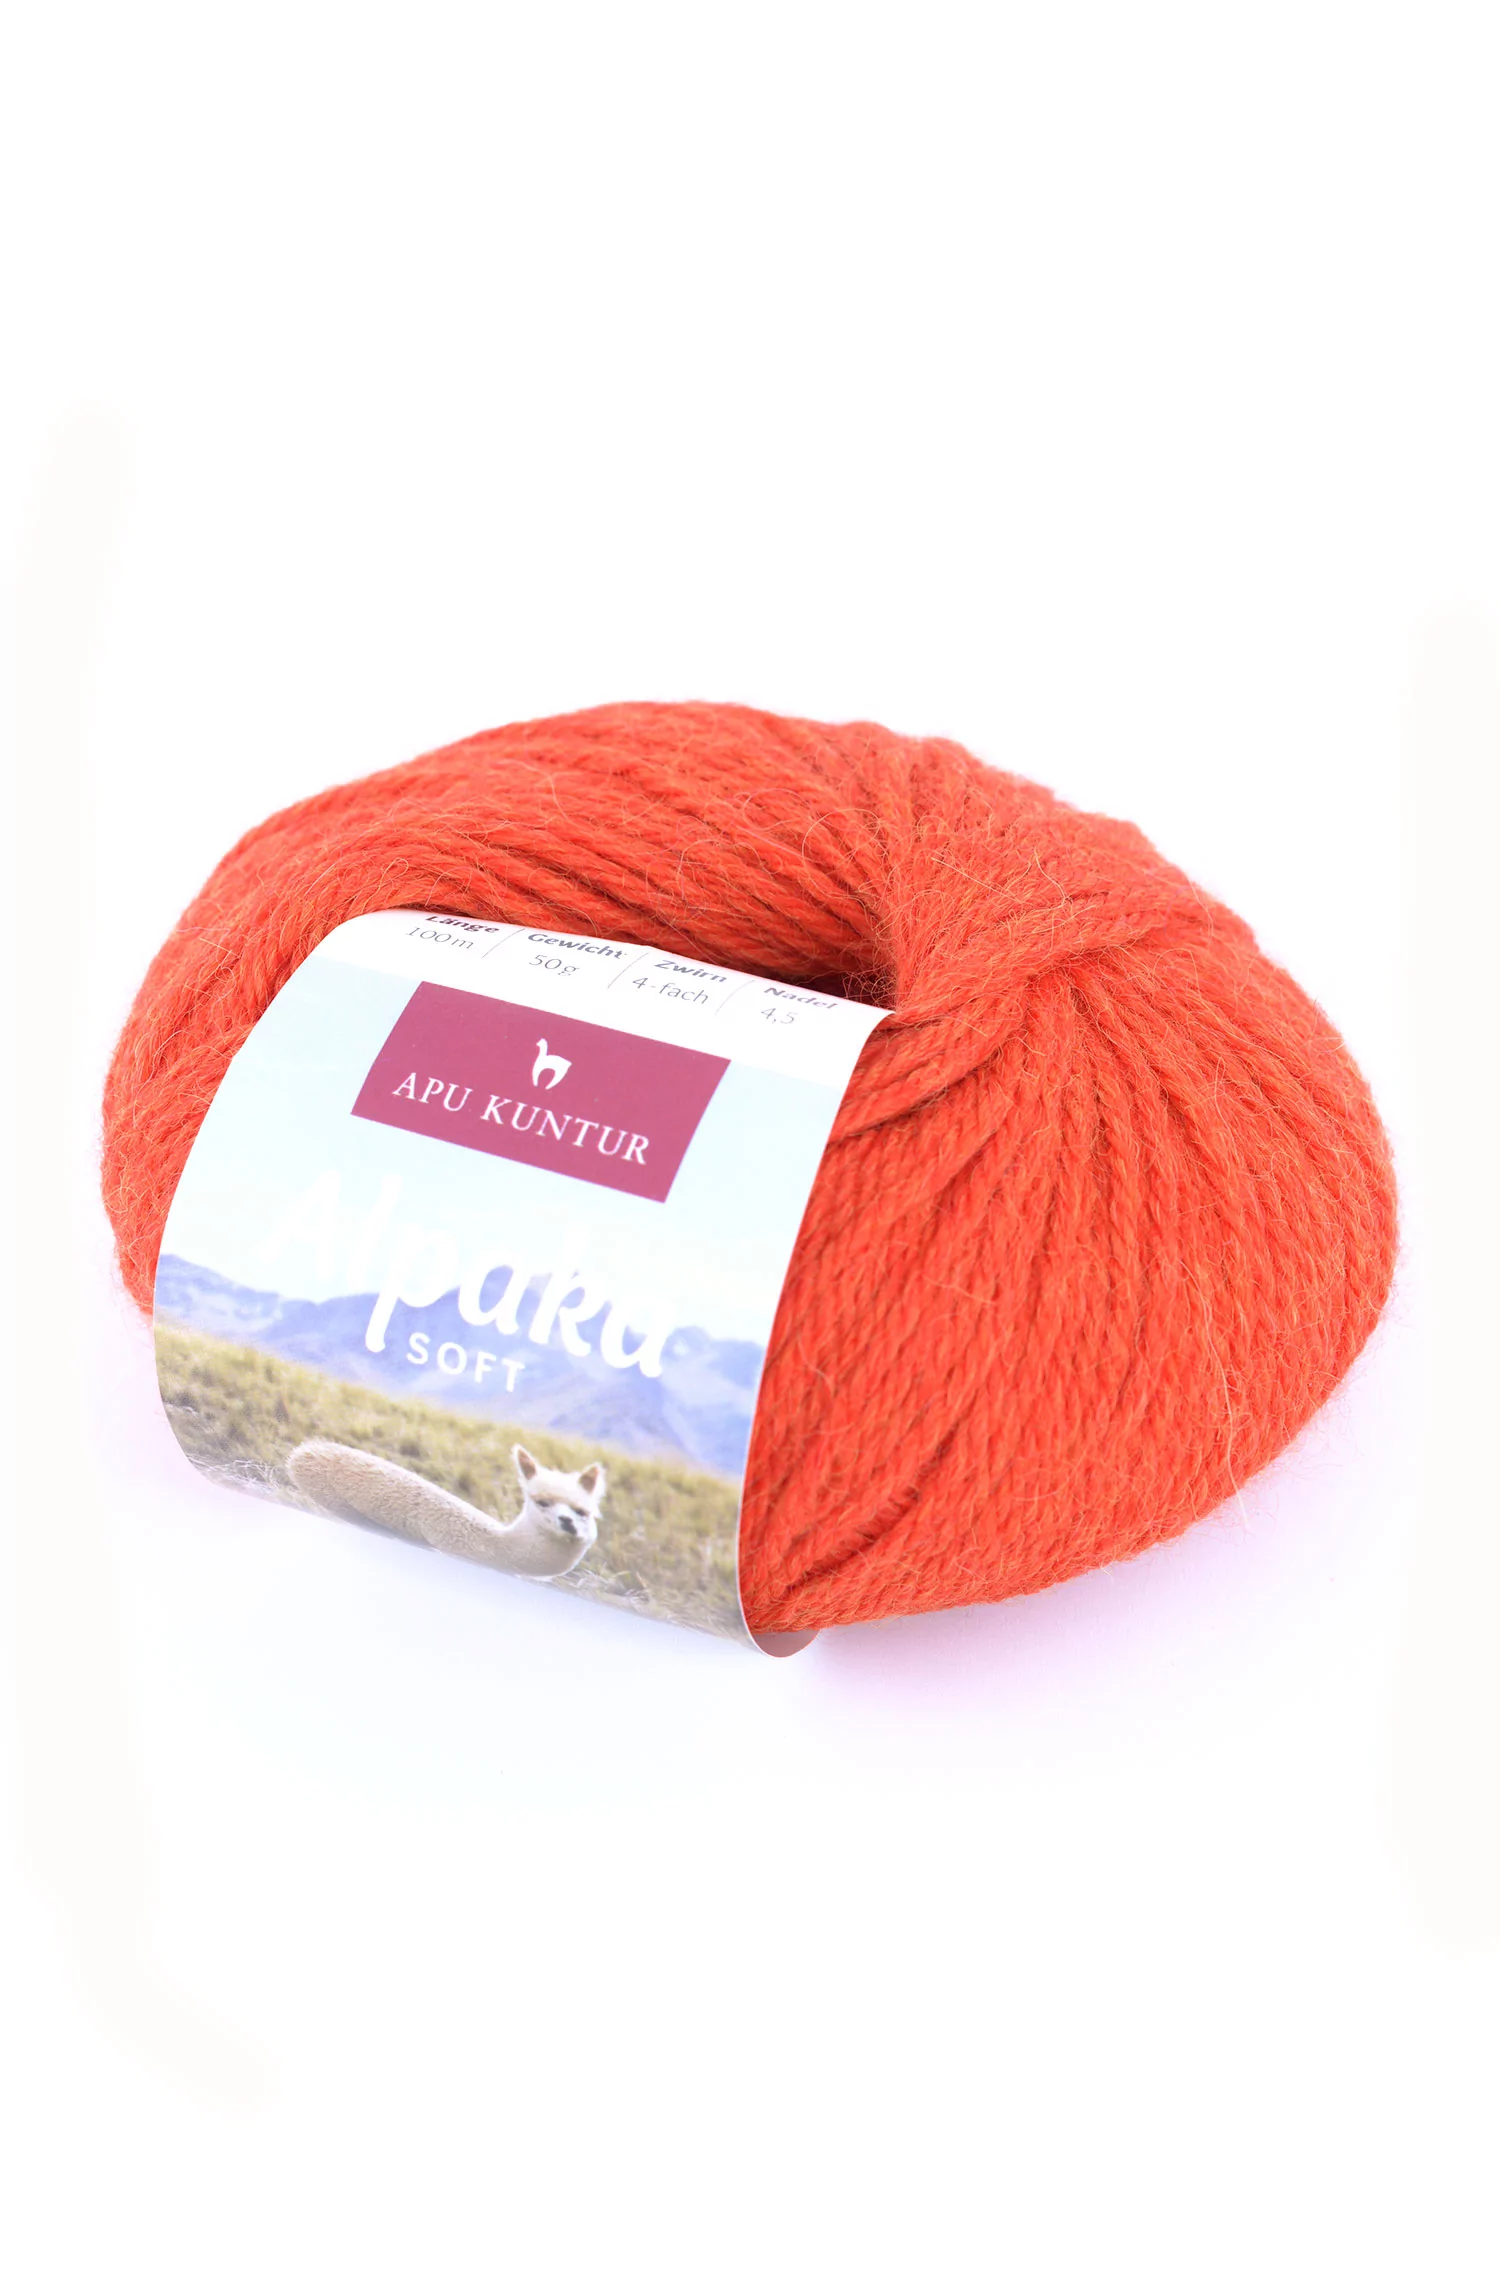 Pelote de laine d'ALPAGA SOFT 50g 100m aiguille 4-4,5 à tricoter crocheter  Nm 4/8 APU KUNTUR